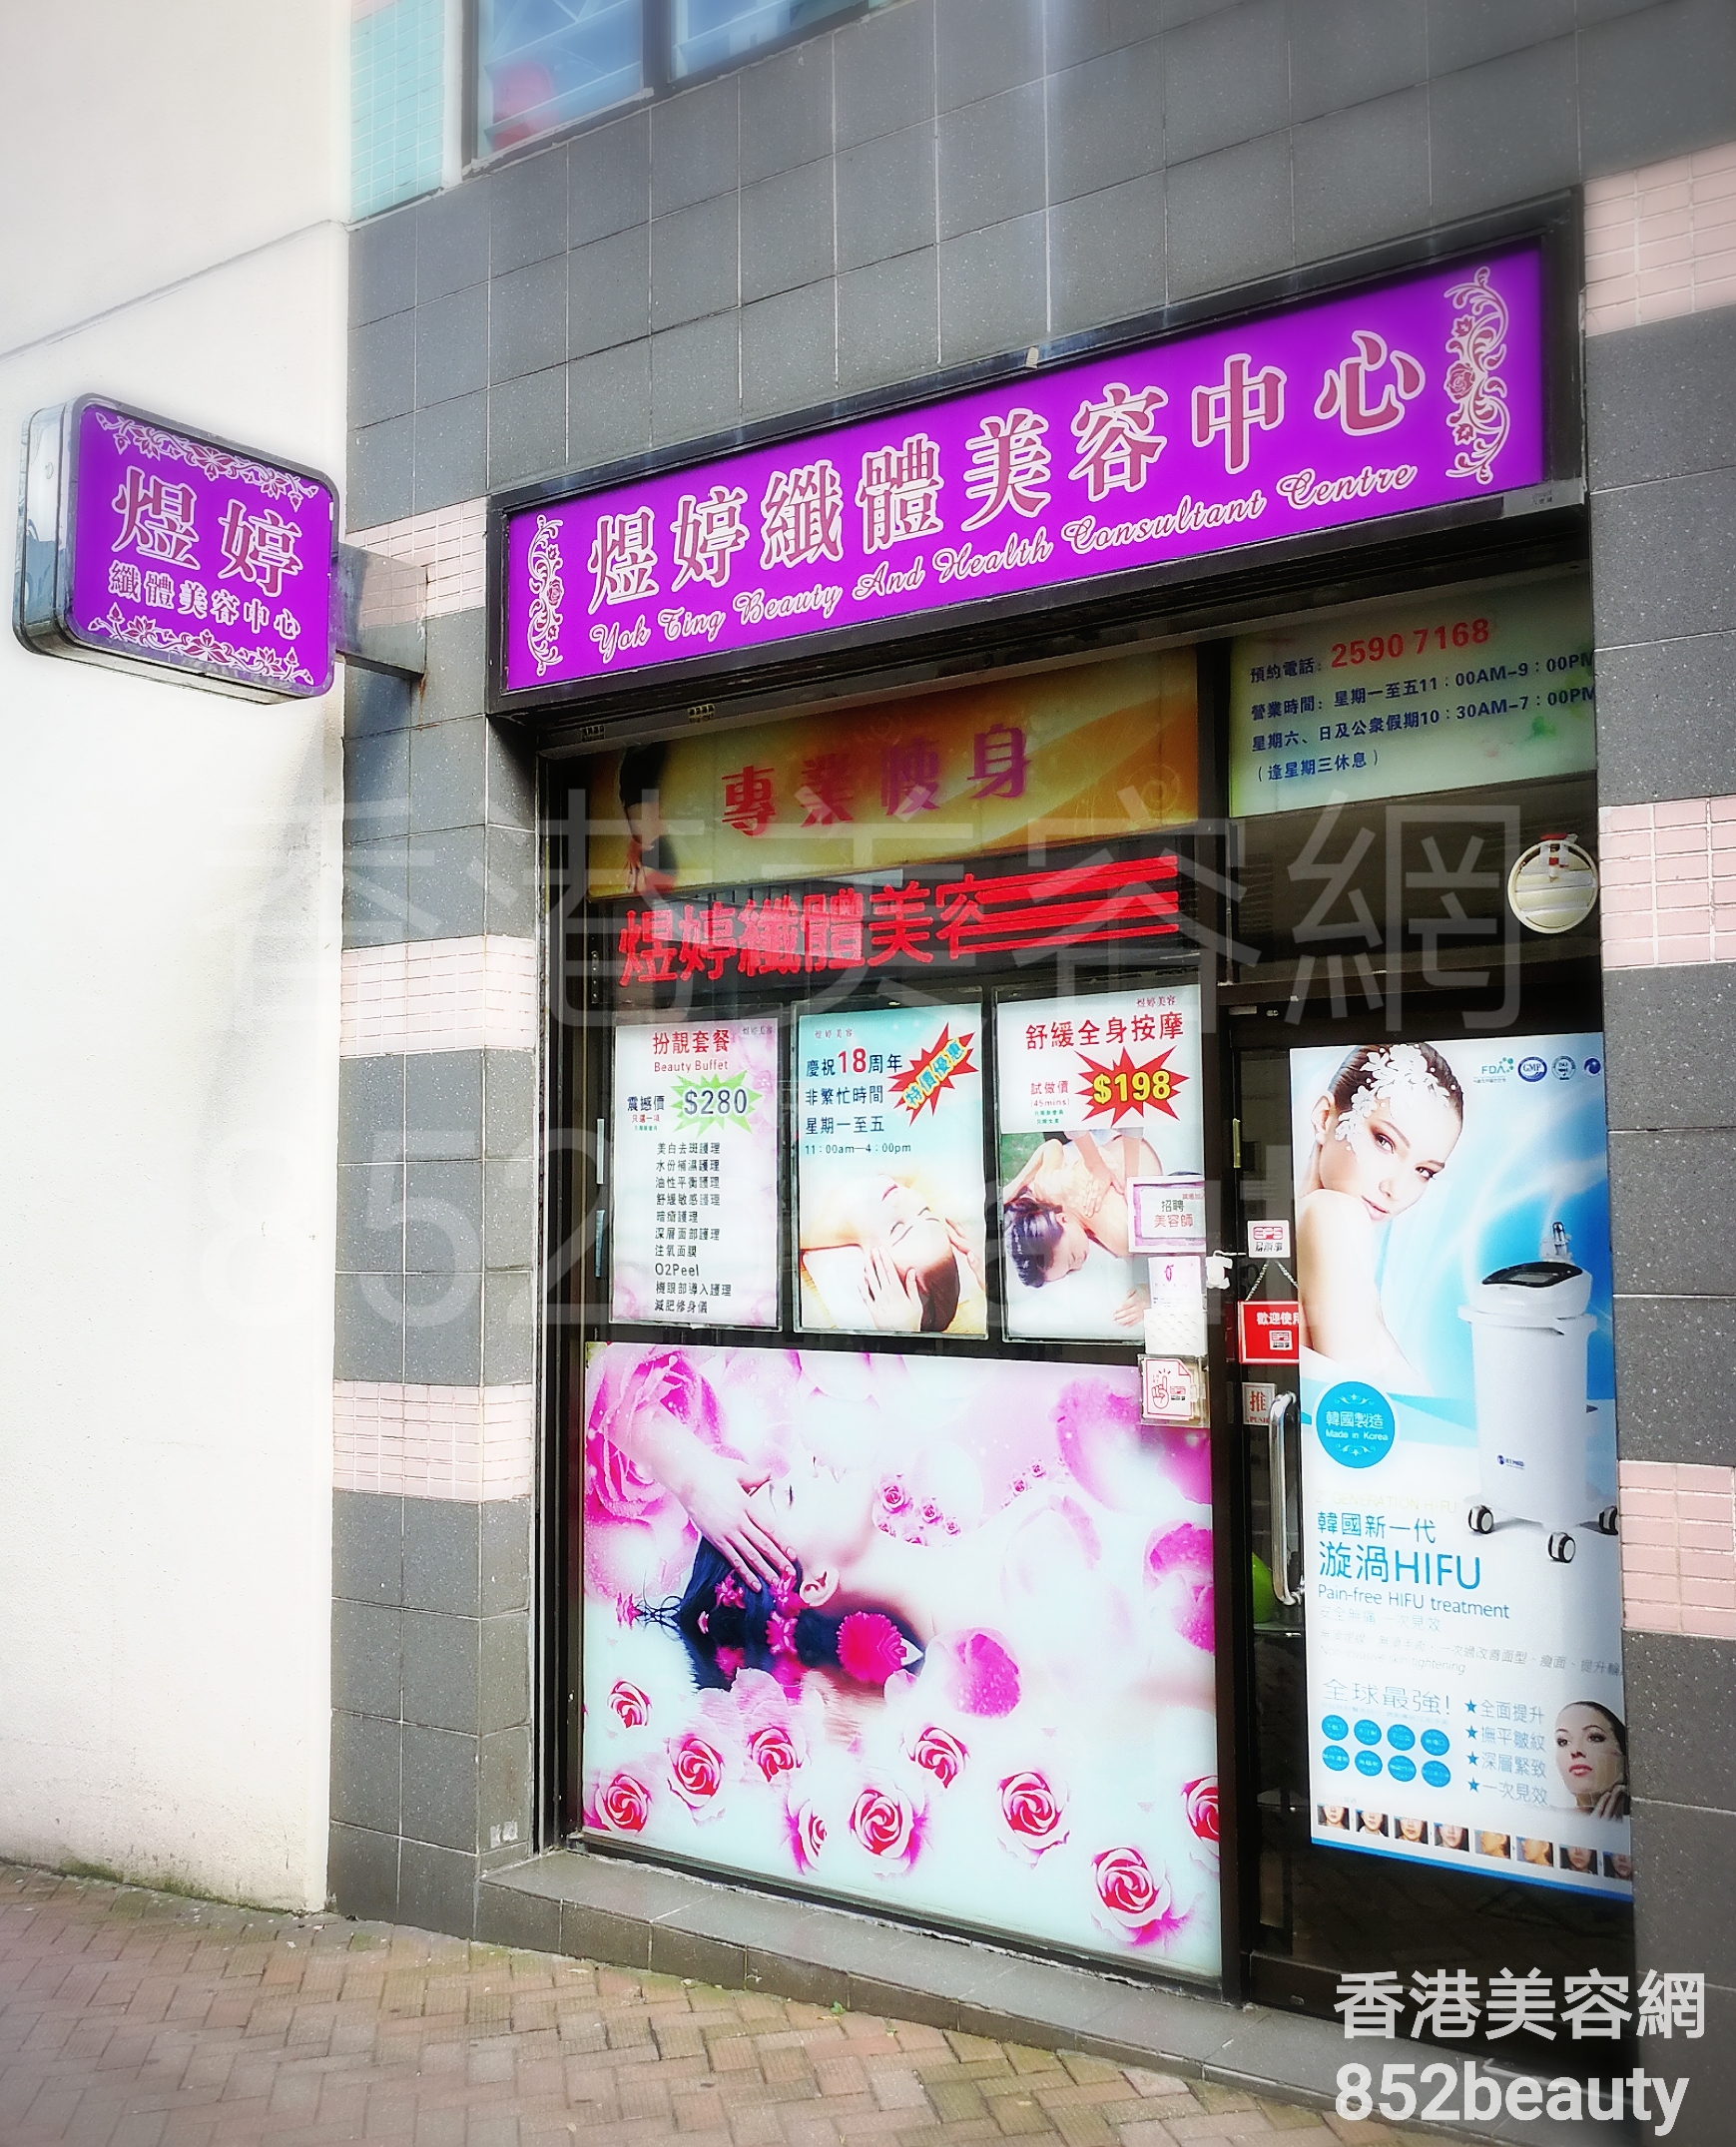 香港美容網 Hong Kong Beauty Salon 美容院 / 美容師: 煜婷 纖體美容中心